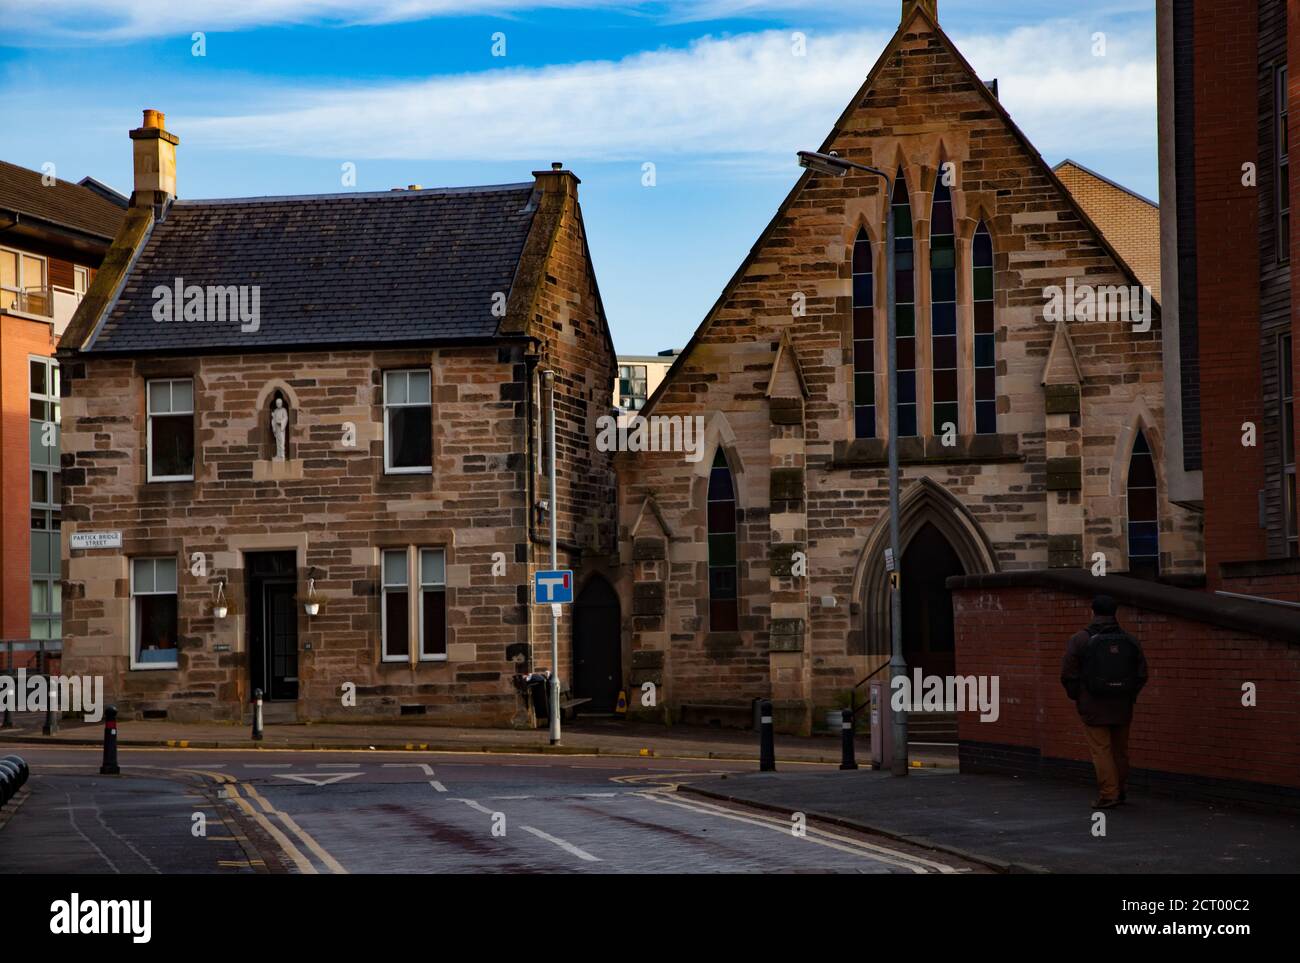 Glasgow / Écosse - 13 novembre 2013 : vue sur la ville. Ancienne église paroissiale catholique romaine de St Simon. Ciel bleu avec nuages. Banque D'Images